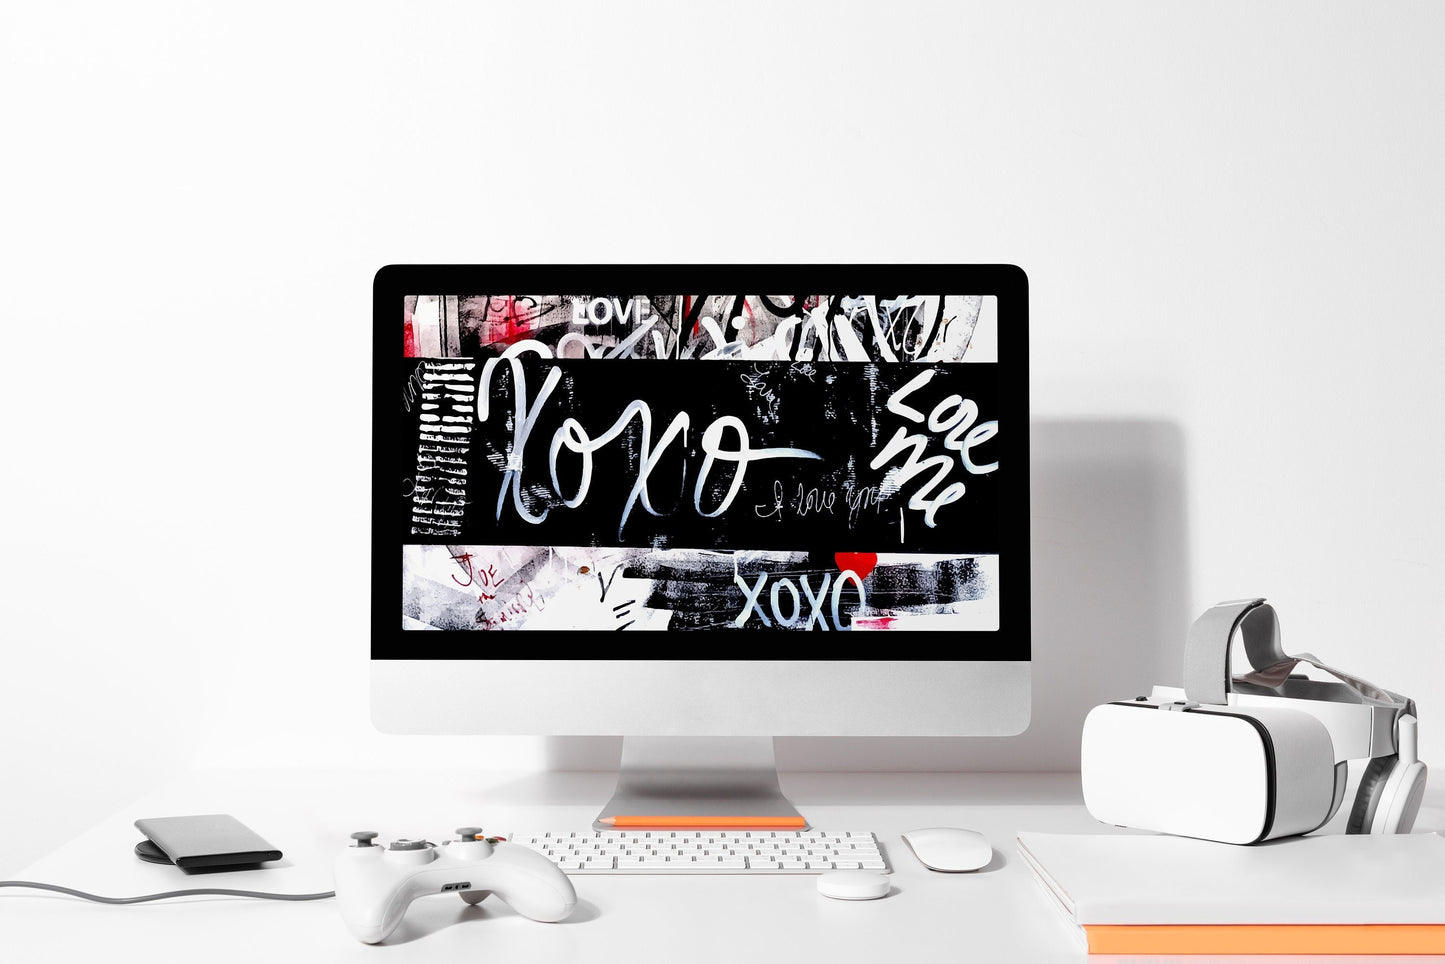 XOXO Love Me Graffiti Desktop Wallpaper, 1920x1080 px, PNG File